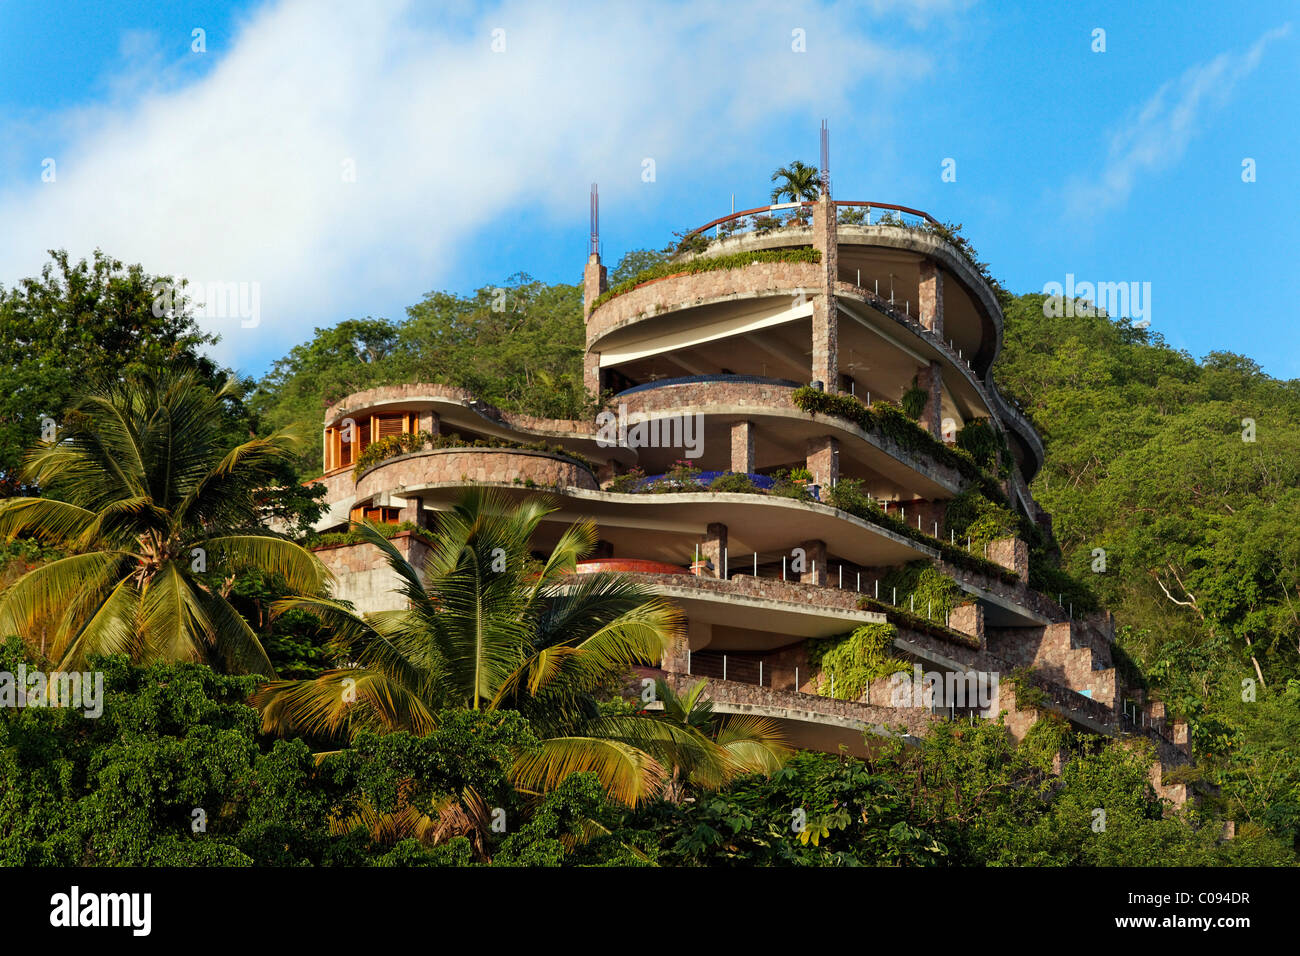 Jade Mountain hotel de lujo, no pared externa, bosque lluvioso, Santa Lucía, Islas de Barlovento, Antillas Menores, el Caribe Foto de stock